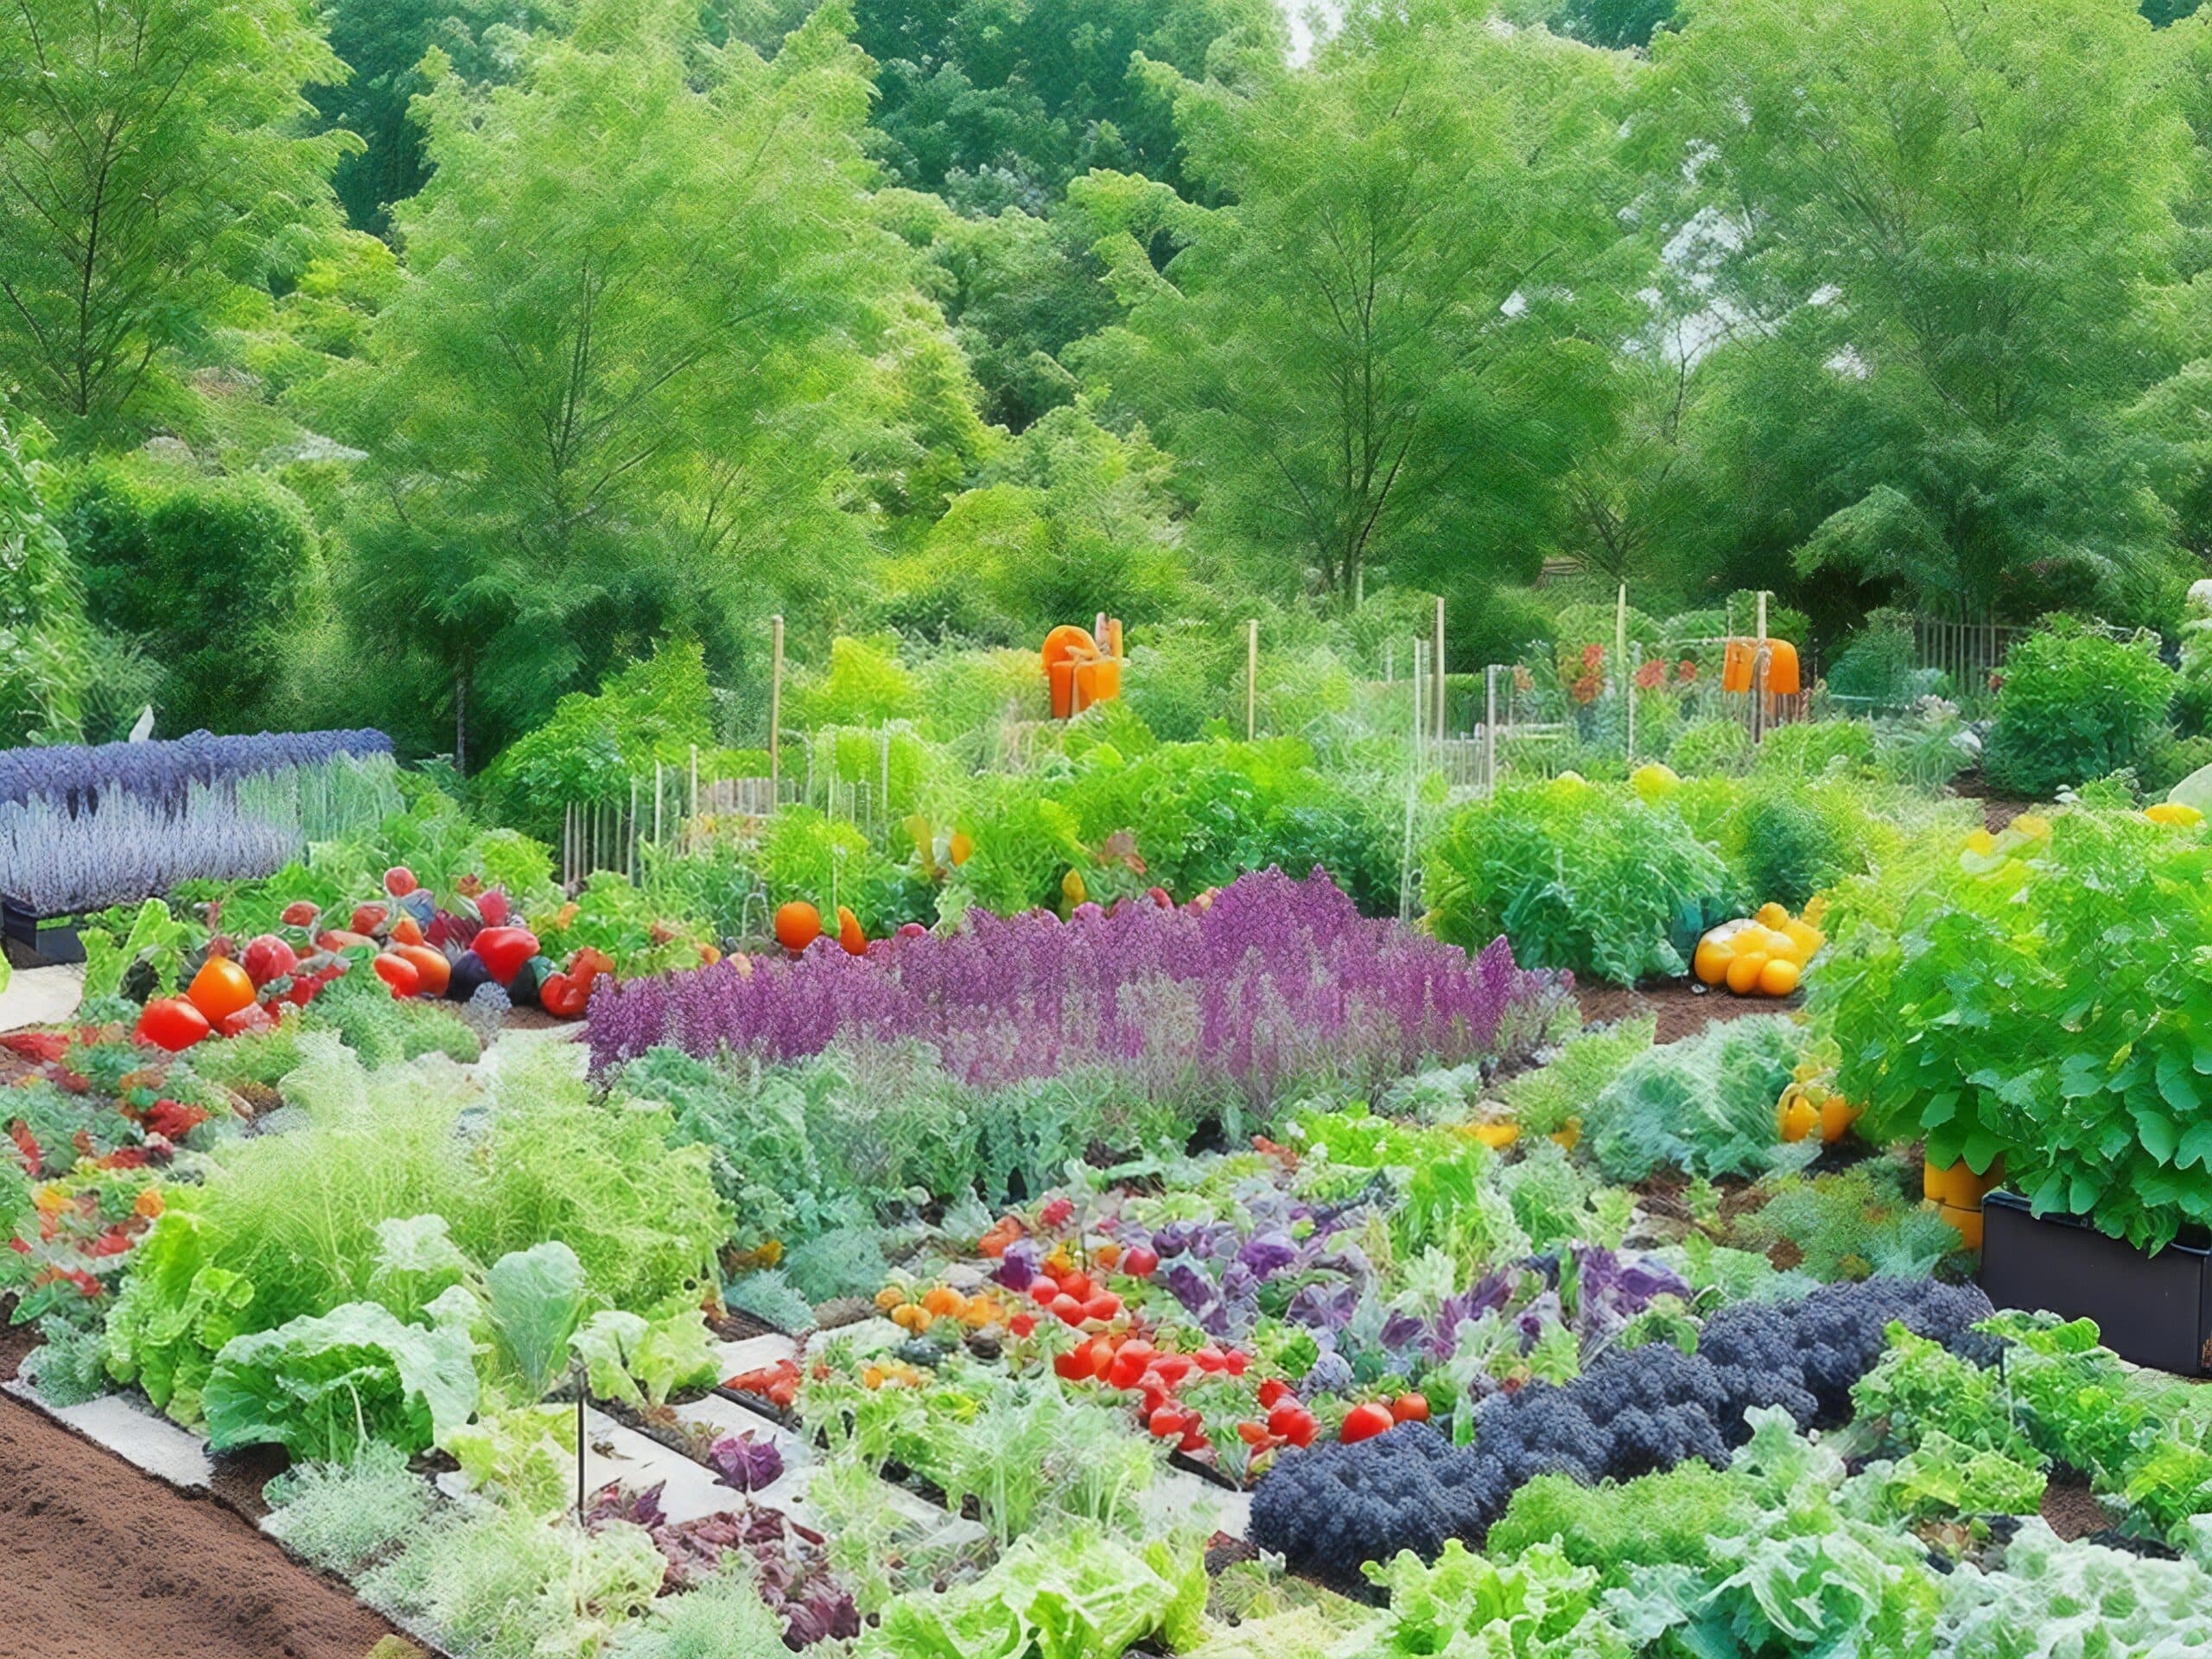 growmyownhealthfood.com : What is the best starter vegetable garden?